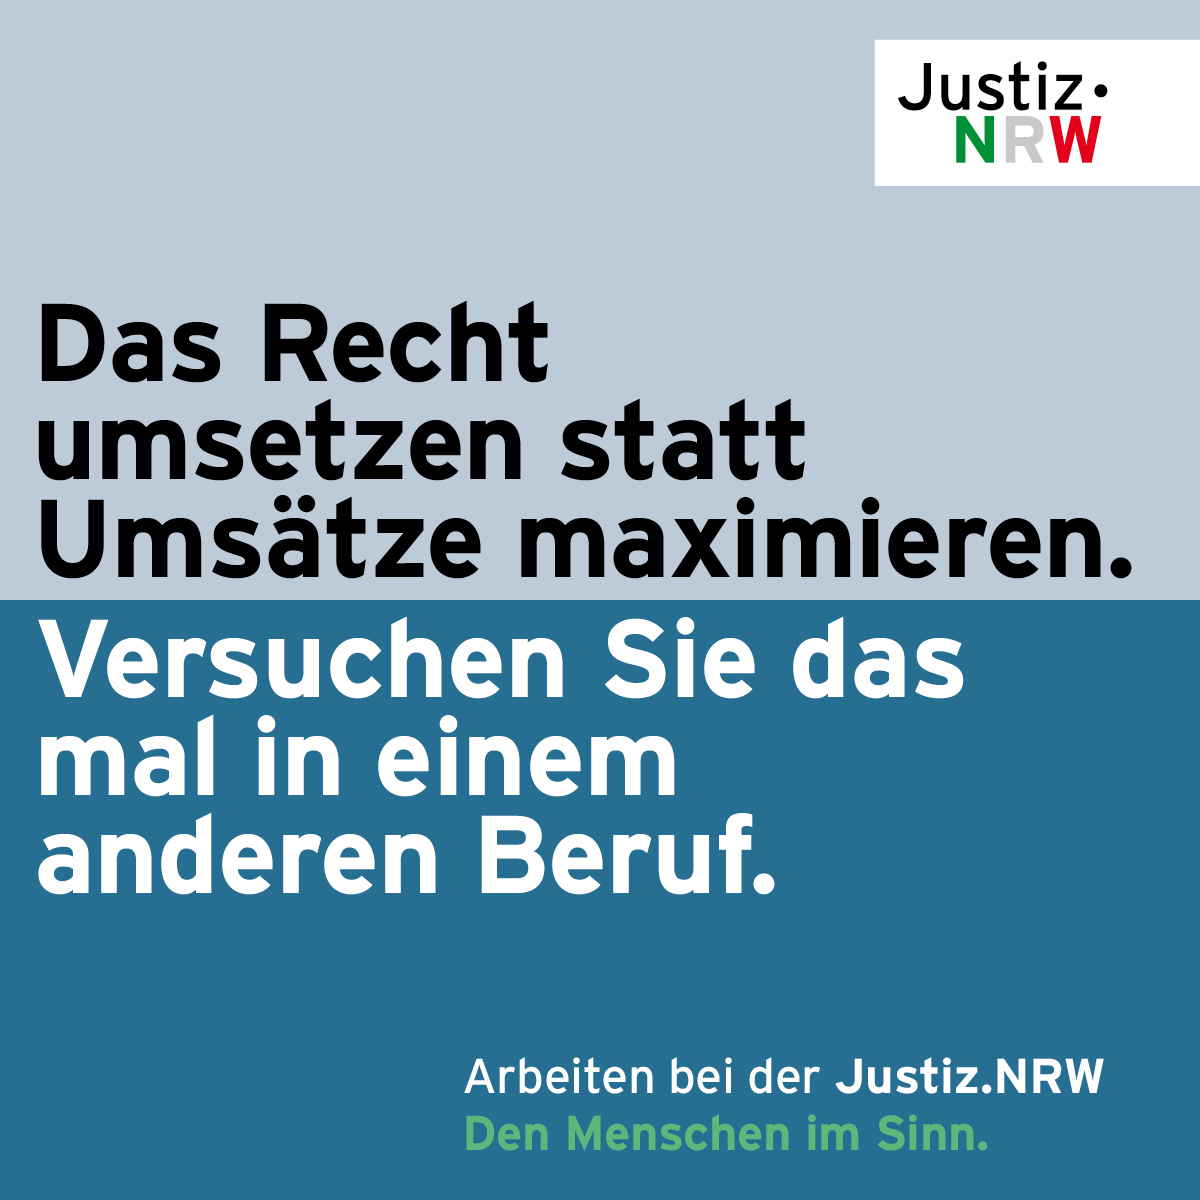 Justiz NRW | Nachwuchsgewinnung